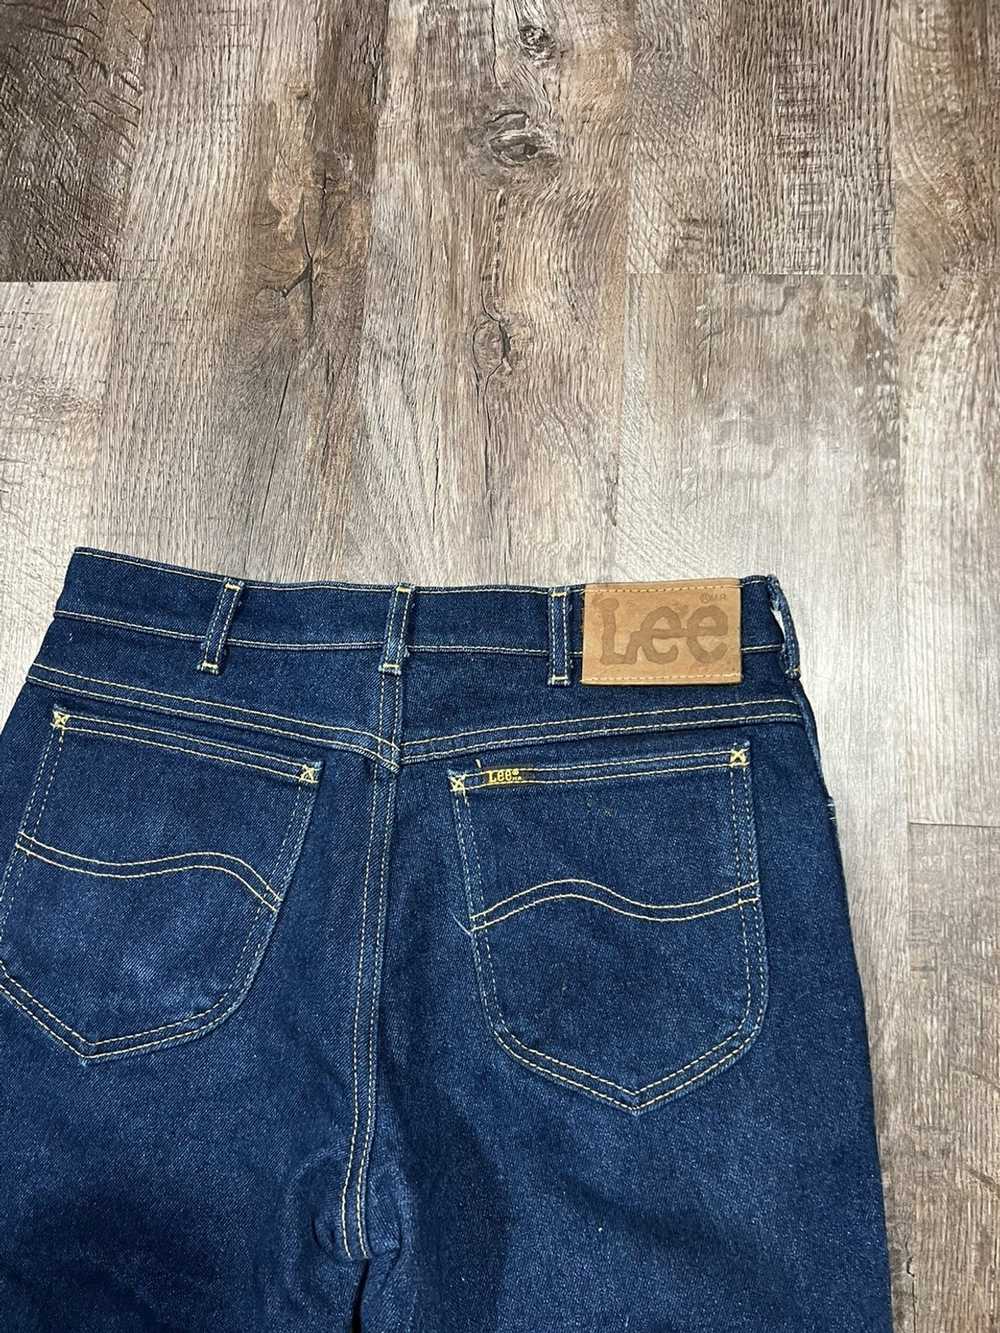 Lee × Vintage Vintage Lee Jeans - image 7